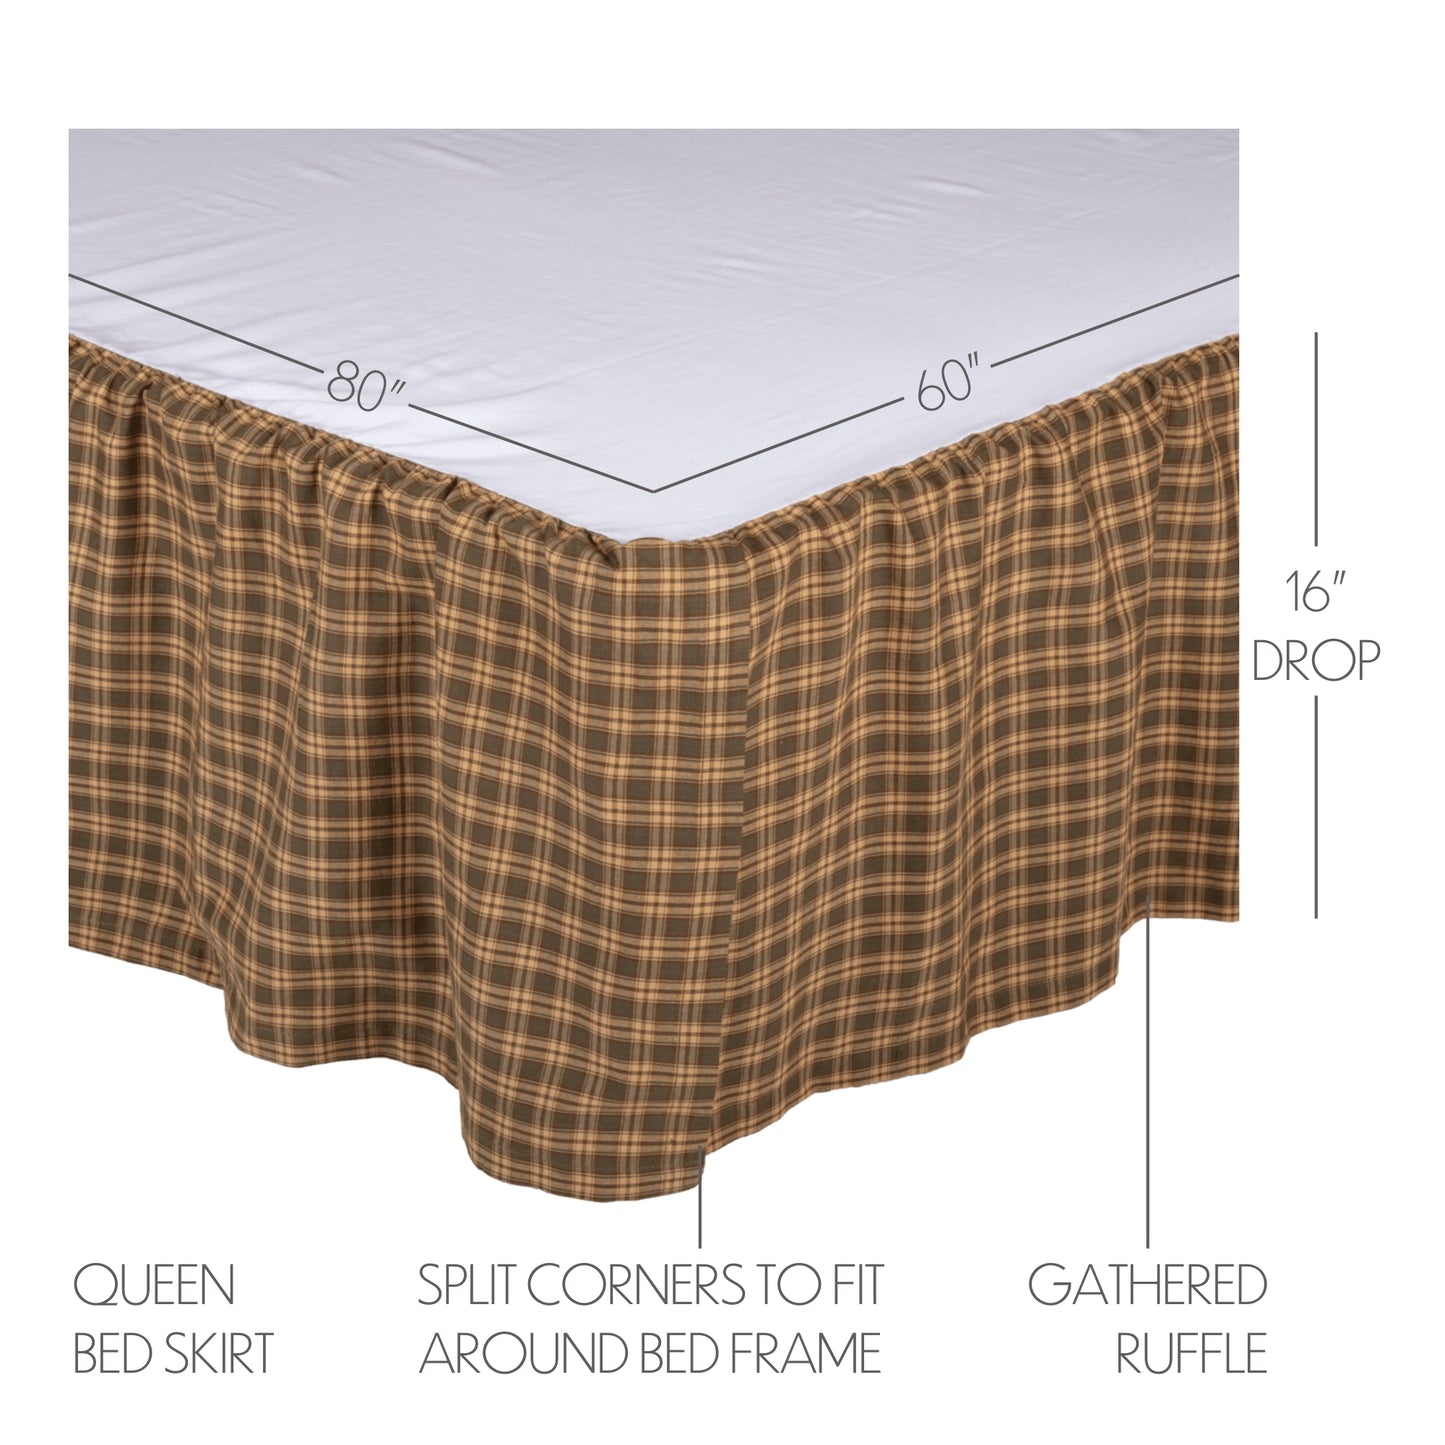 53618-Cedar-Ridge-Queen-Bed-Skirt-60x80x16-image-1